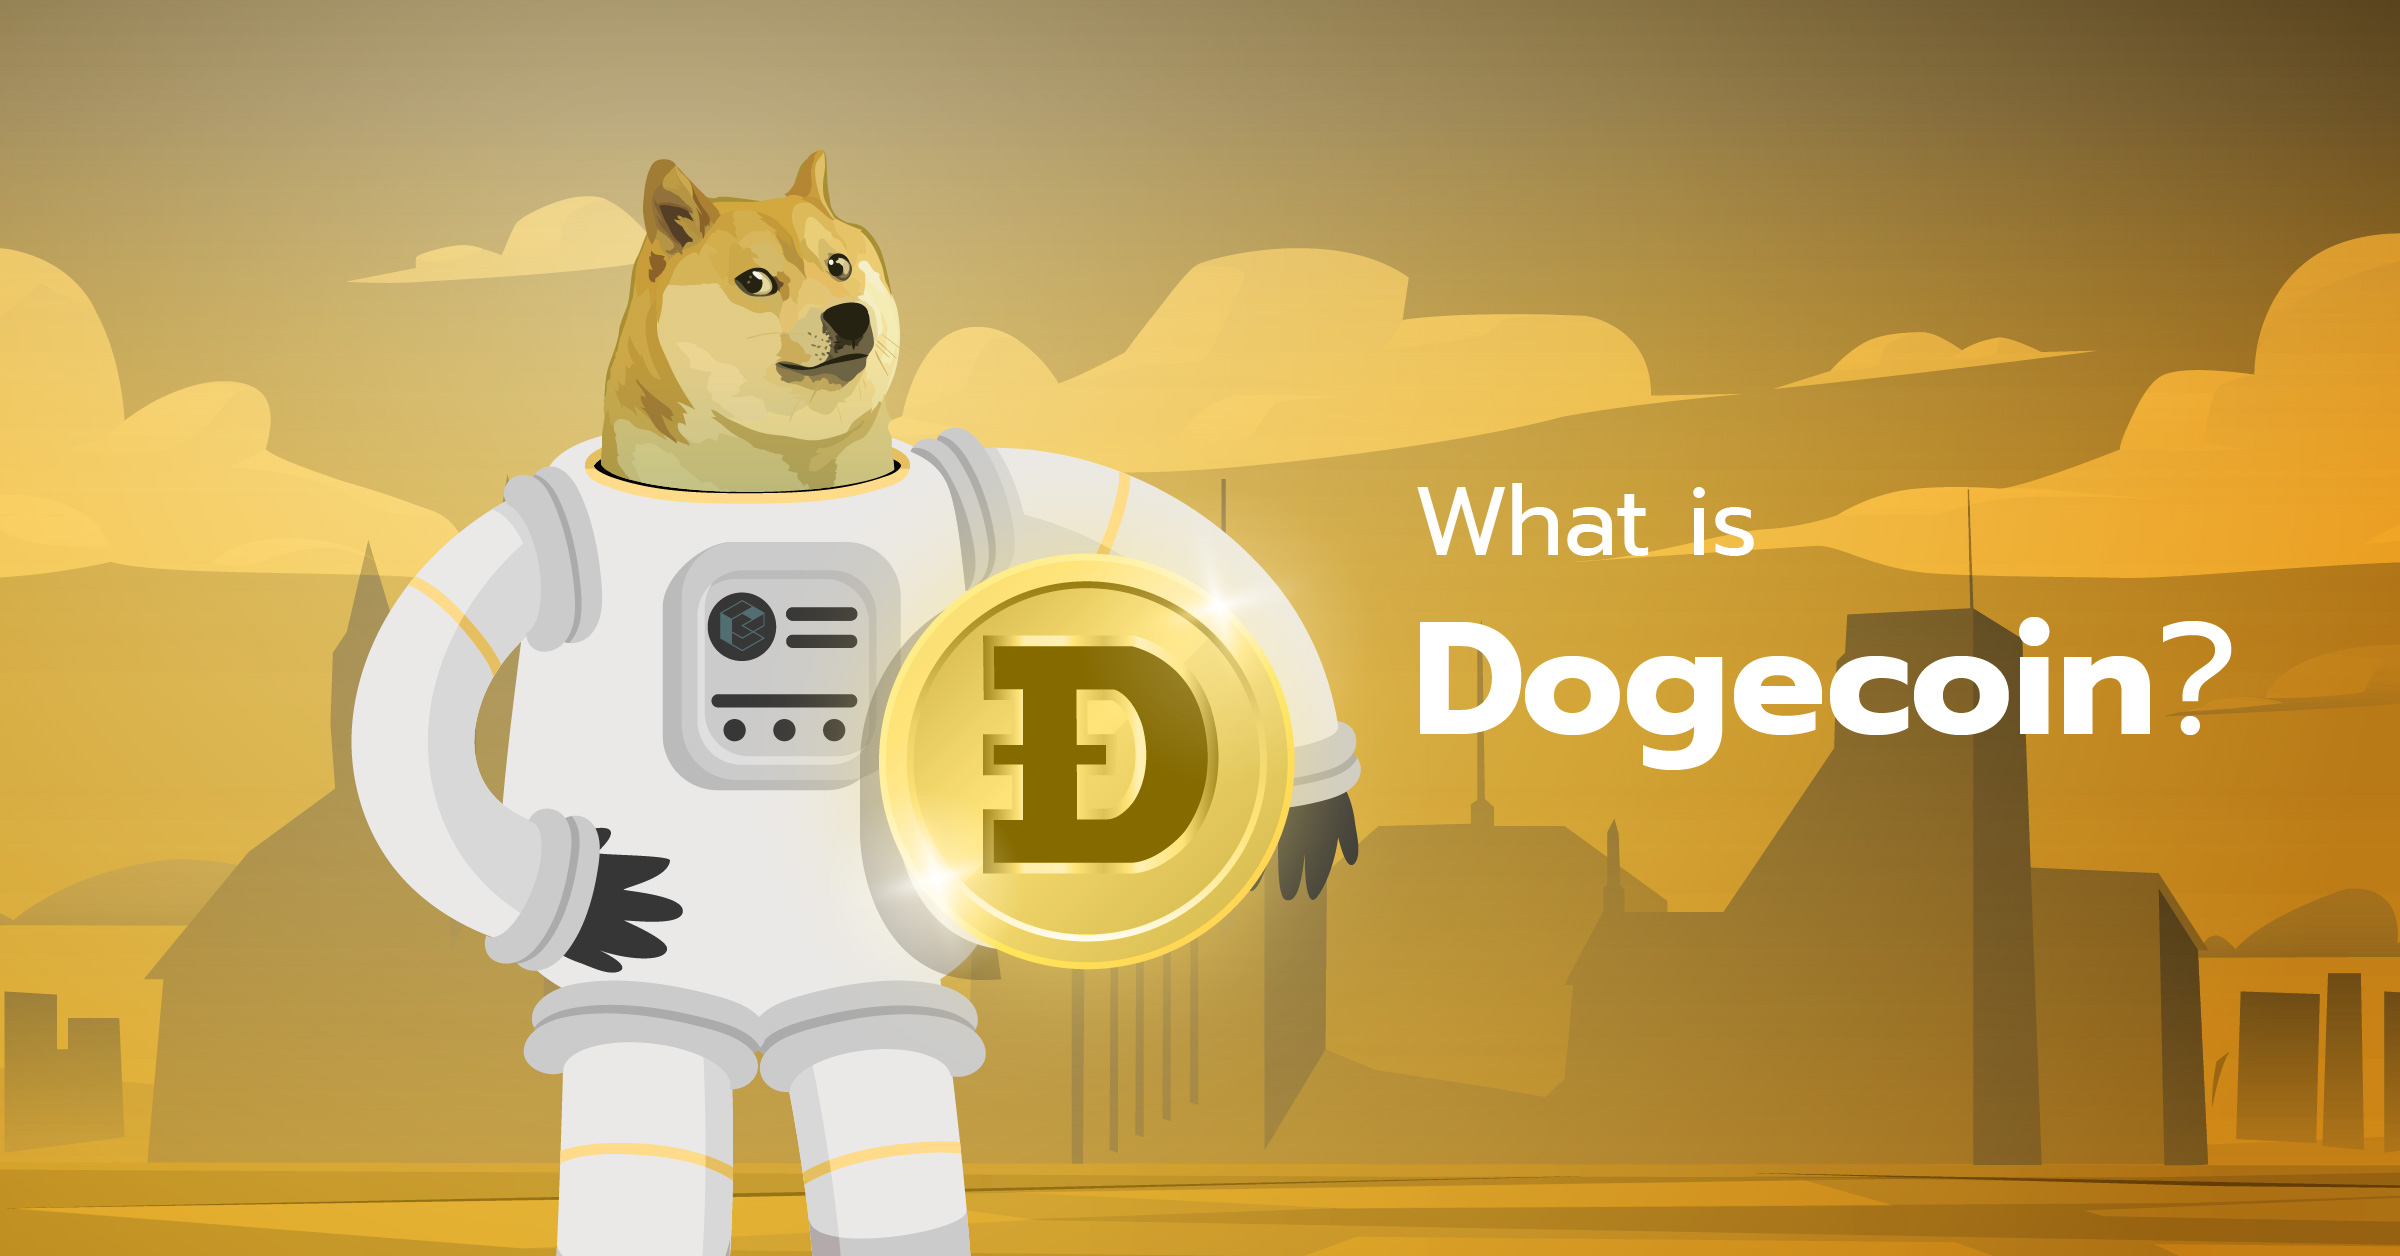 ارز دیجیتال دوج کوین (Dogecoin) - DOGE چیست؟